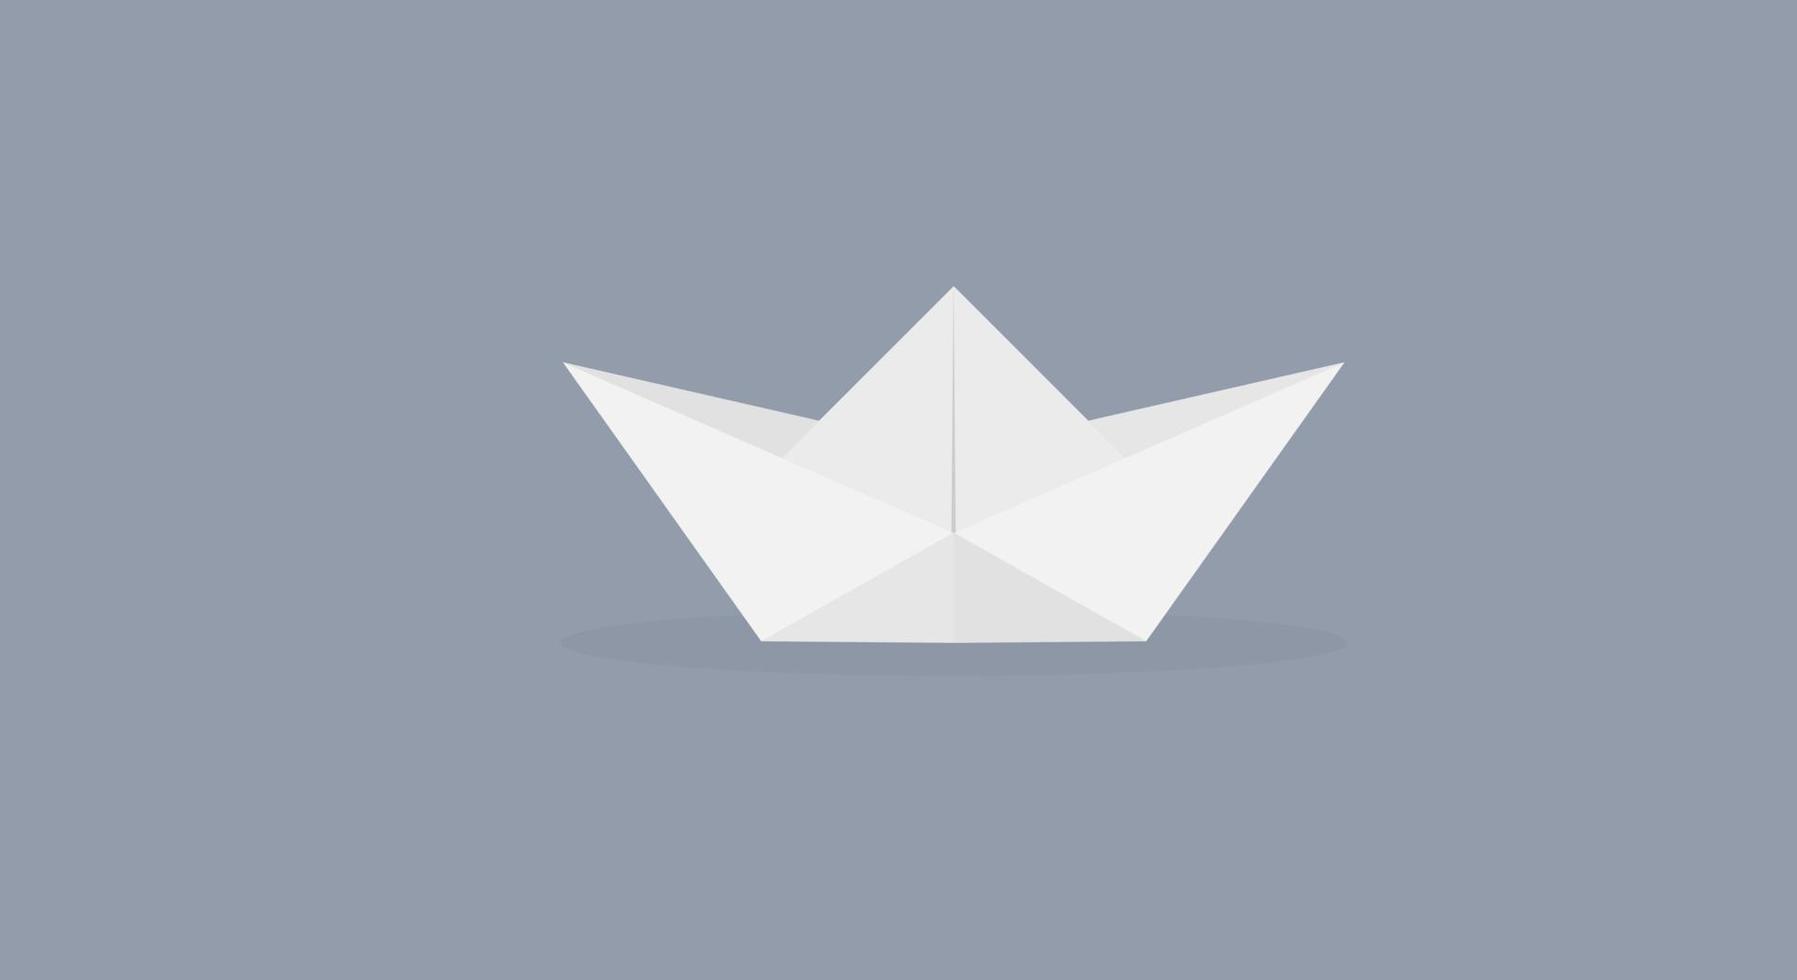 vikta papper båt, origami vektor uppsättning isolerat på blå bakgrund. vektor illustration